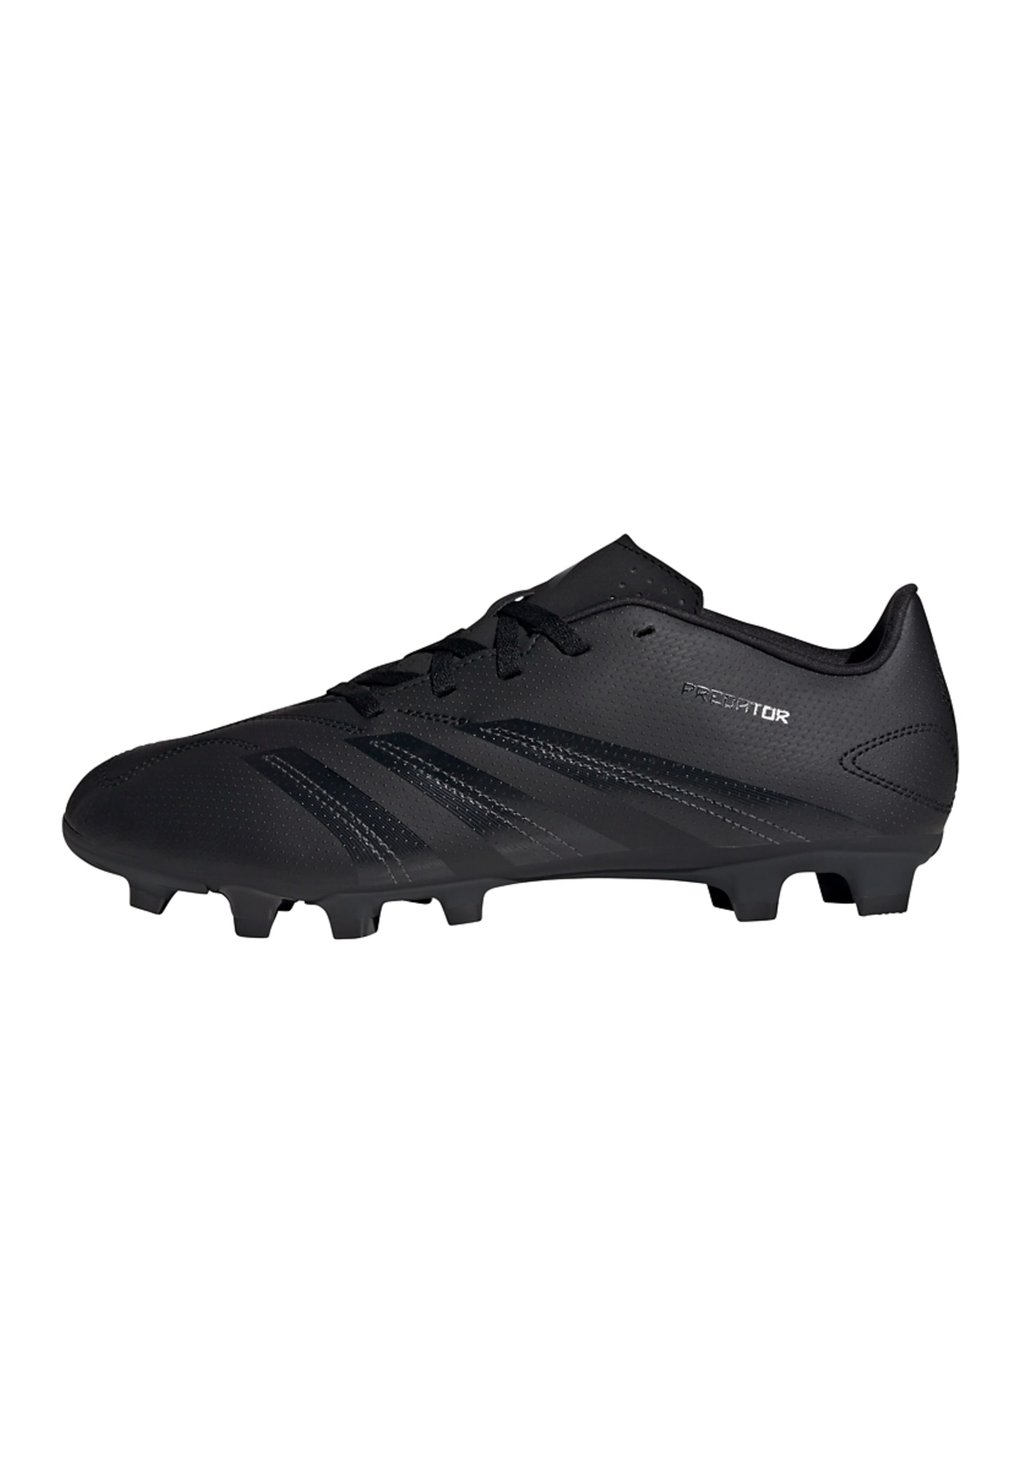 Футбольные бутсы PREDATOR CLUB FXG adidas Performance, цвет core black/carbon/core black кроссовки adidas sportswear zapatillas core black core black carbon